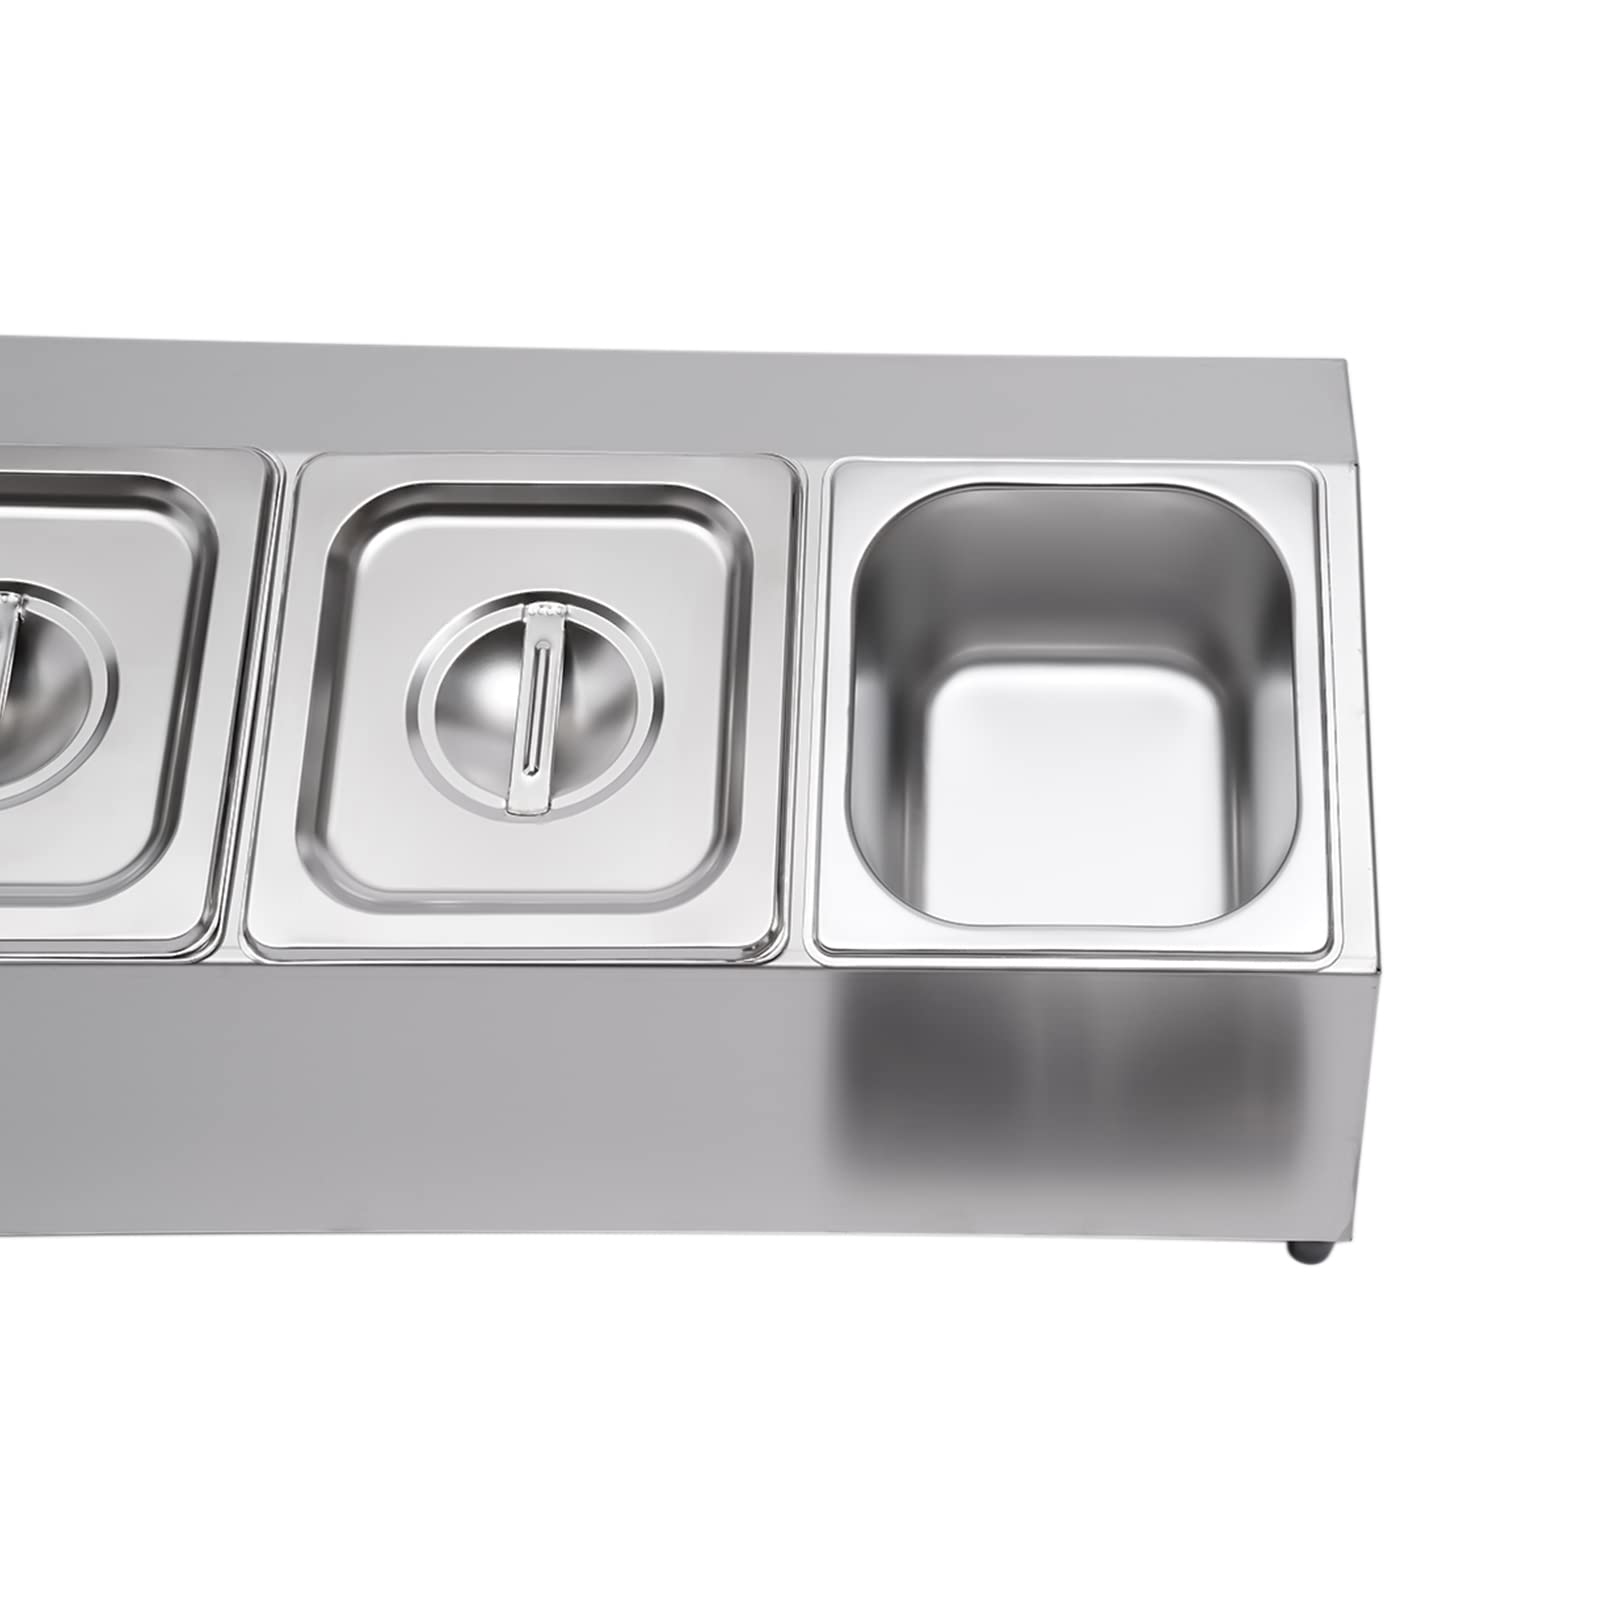 Aufsatzbord für Behälter Gastronormbehälter Edelstahl inkl. 5 Behälter mit Deckel, Spülmaschinenfest